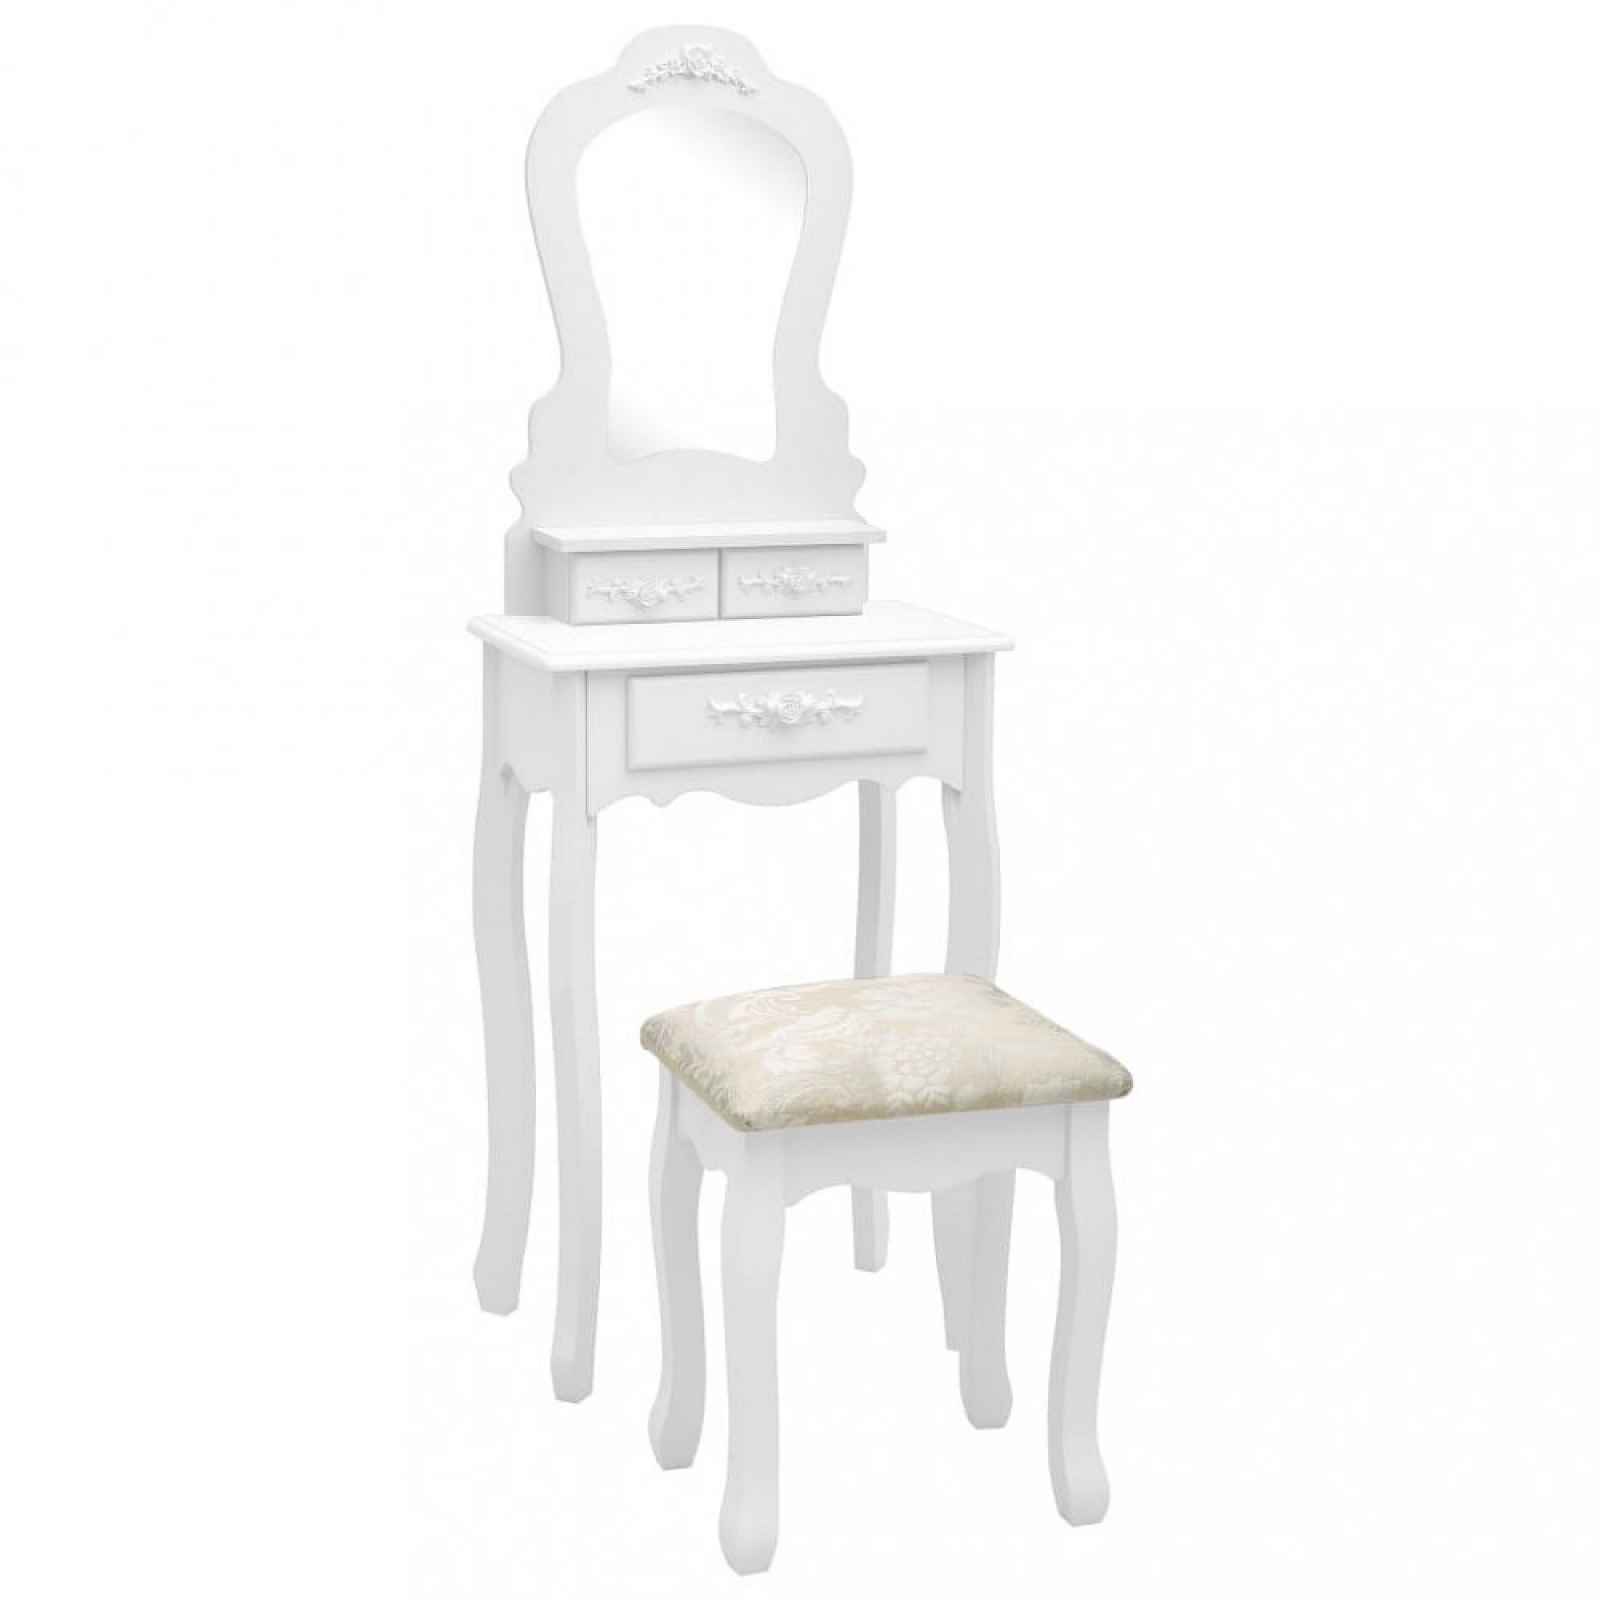 Toaletní stolek s taburetem Bílá